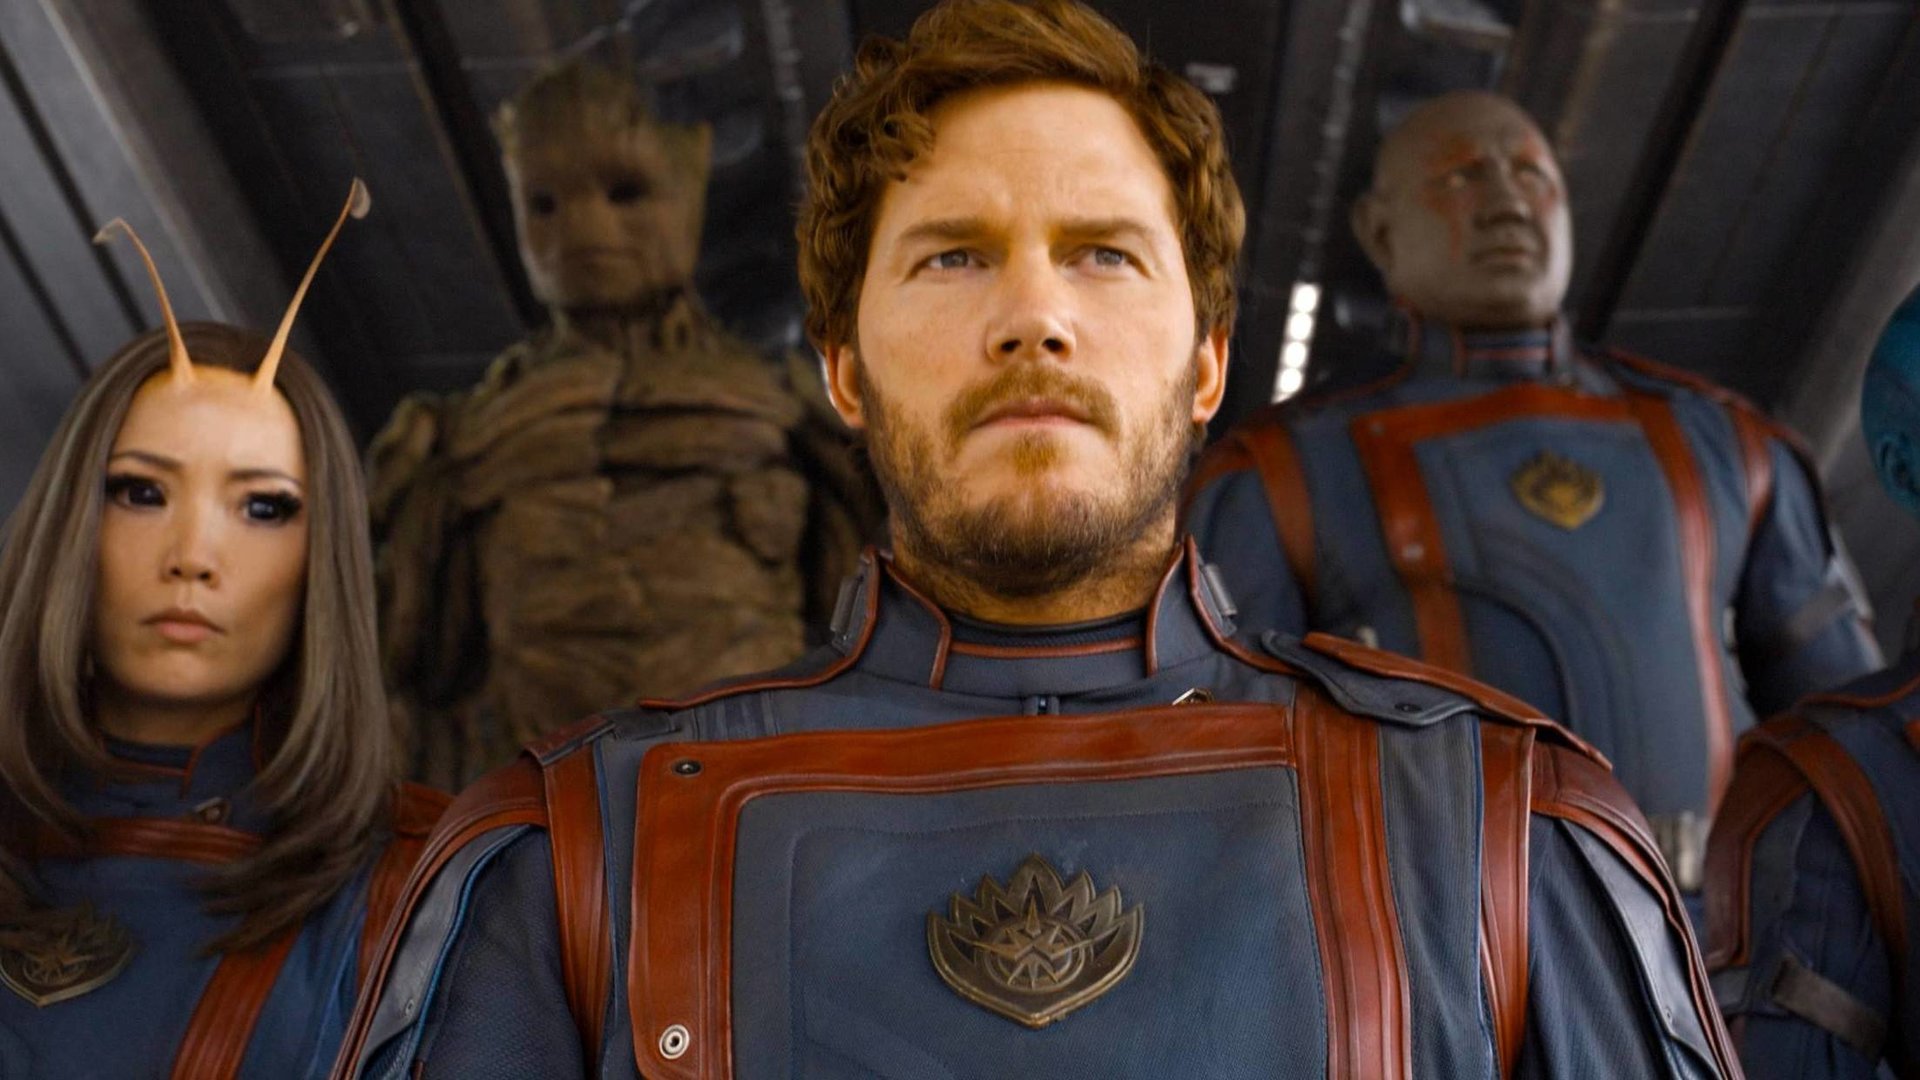 #Star-Lord kehrt mit eigenem Marvel-Film zurück: So geht es mit Chris Pratt im MCU weiter